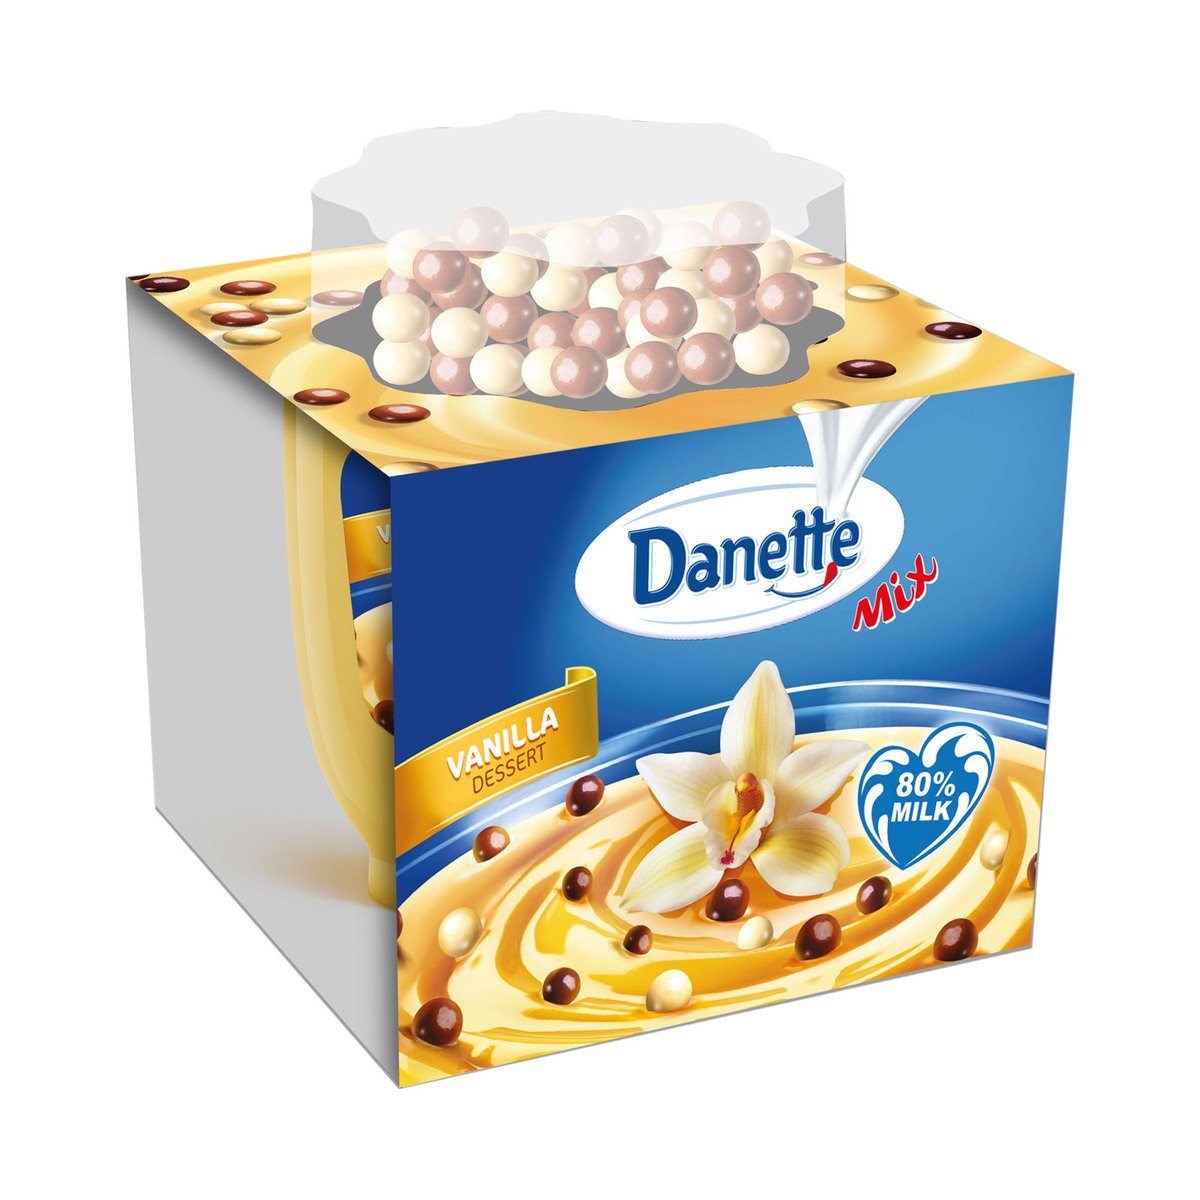 Danette Vanilla Dessert with Choco Balls 75 g